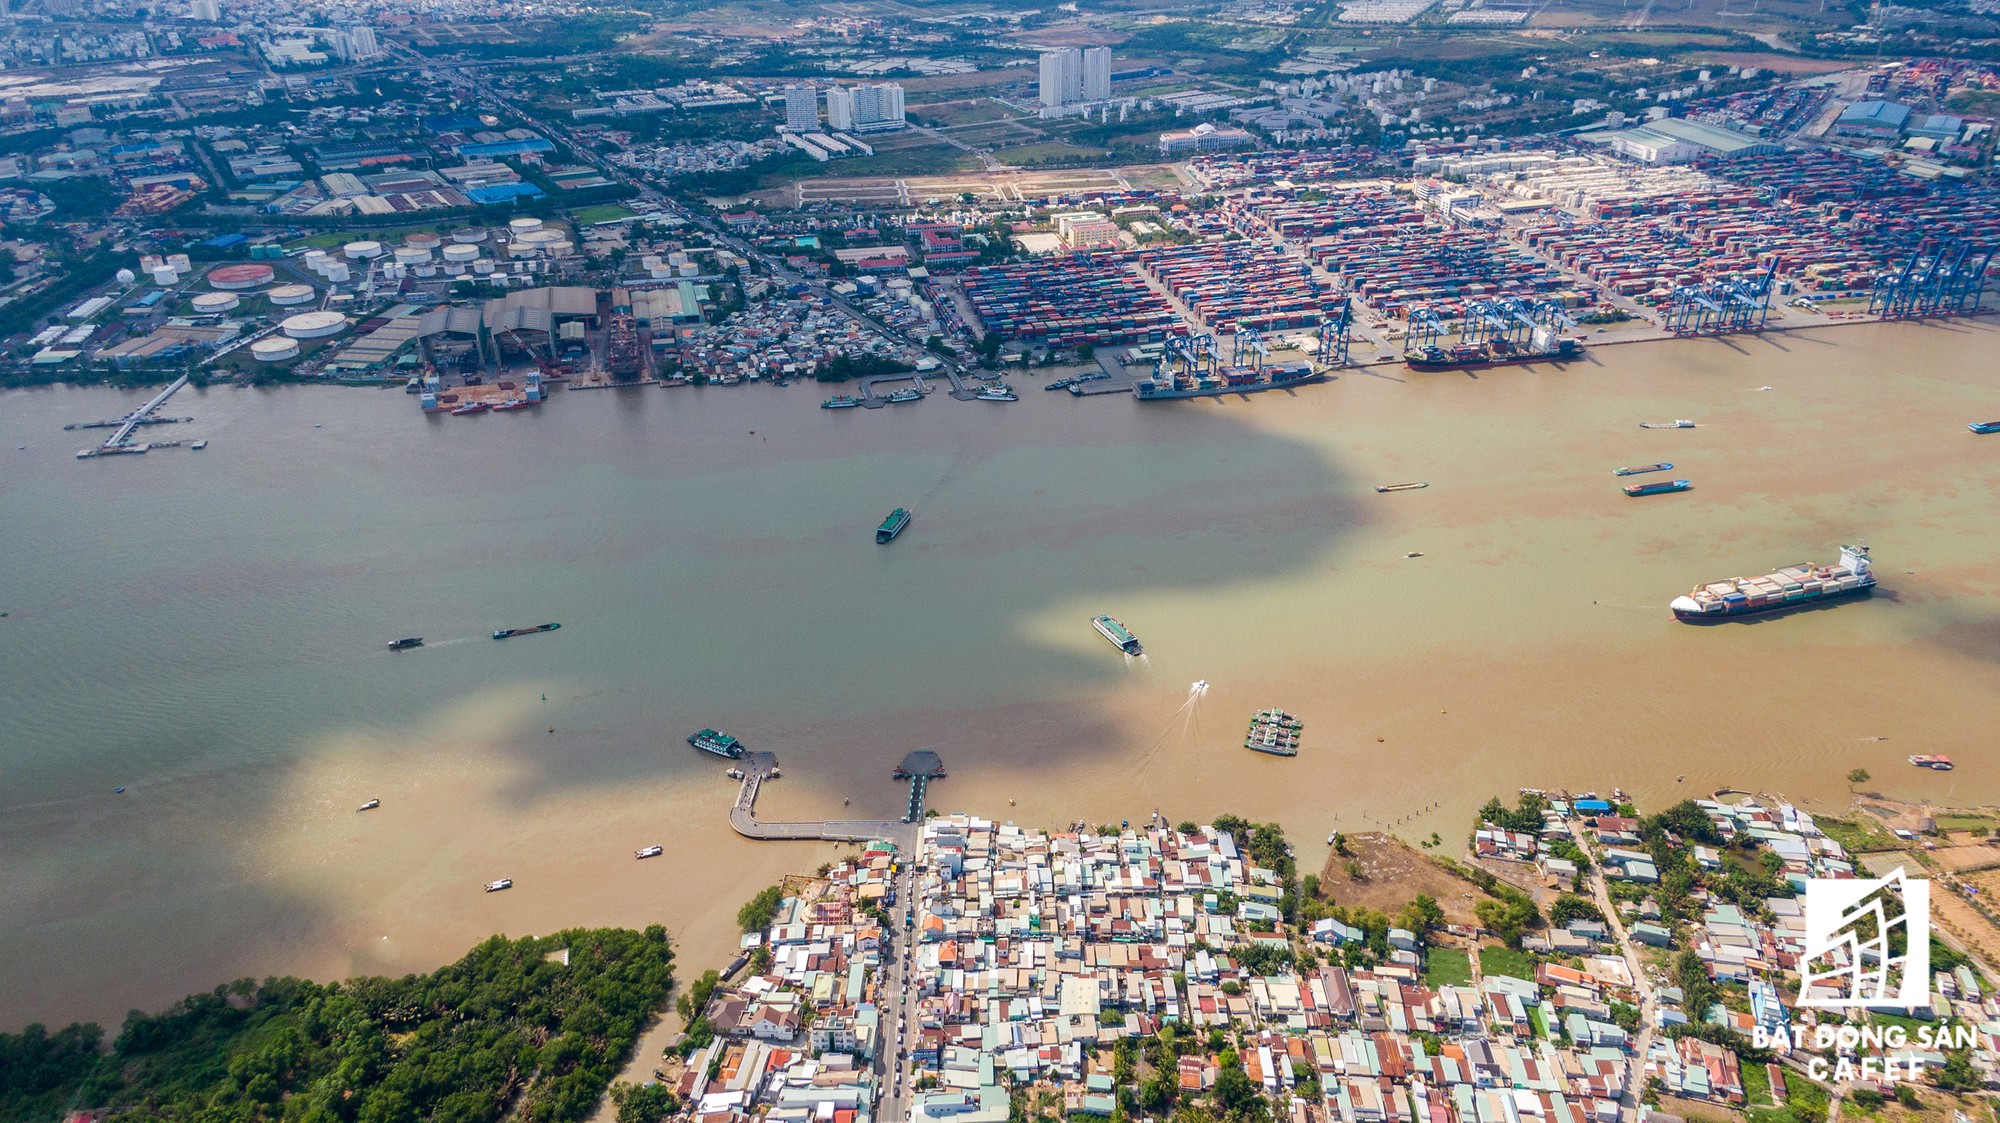 Đồng Nai chốt phương án xây cầu Cát Lái nối Nhơn Trạch và TP.HCM, bức tranh thị trường bất động sản thay đổi chóng mặt - Ảnh 2.